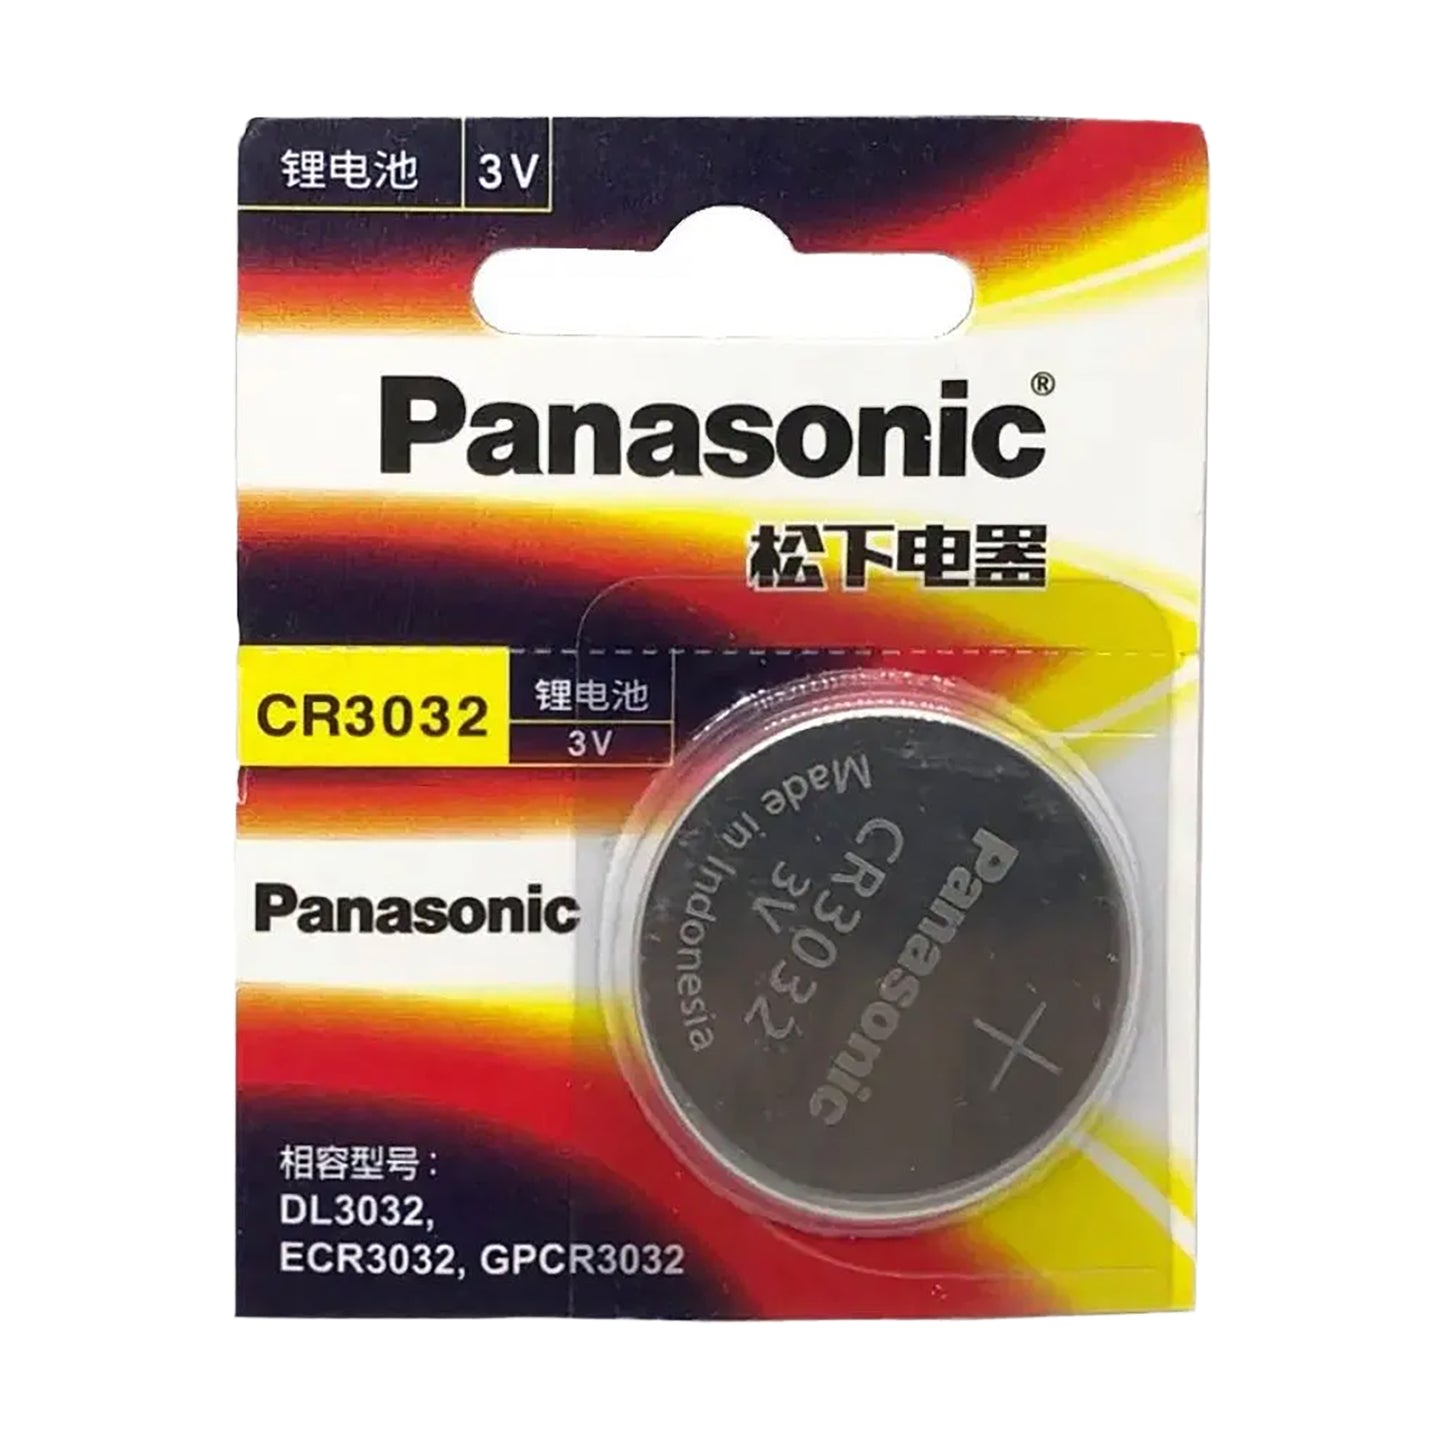 PAN-CR3032-1 - литиевая батарейка Panasonic тип CR3032, напряжение: 3 В (1 шт. в блистере)